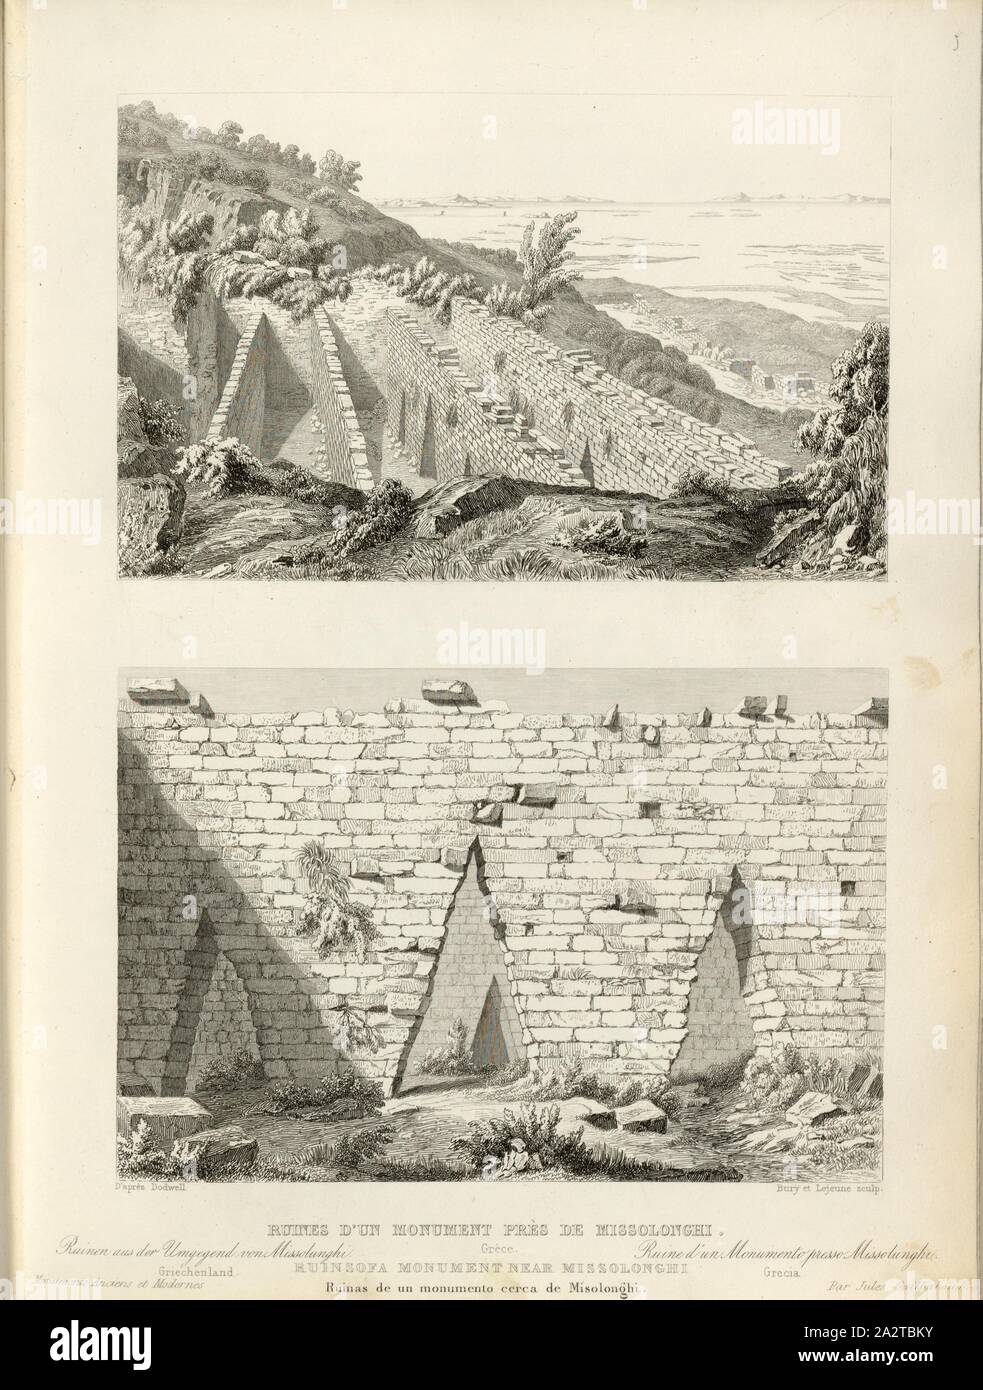 Ruins of a Monument near Missolonghi, Ruins in the area Mesolongi in Greece, signed: d'après Dodwell, Bury et Leujeune (sculp.), Fig. 16, p. 79, Dodwell, Edward (d'après.), Bury, J. (sc.), Leujeune, Emile (sc.), 1853, Jules Gailhabaud: Monuments anciens et modernes. Bd. 1. Paris: Librairie de Firmin Didot frères, 1853 Stock Photo